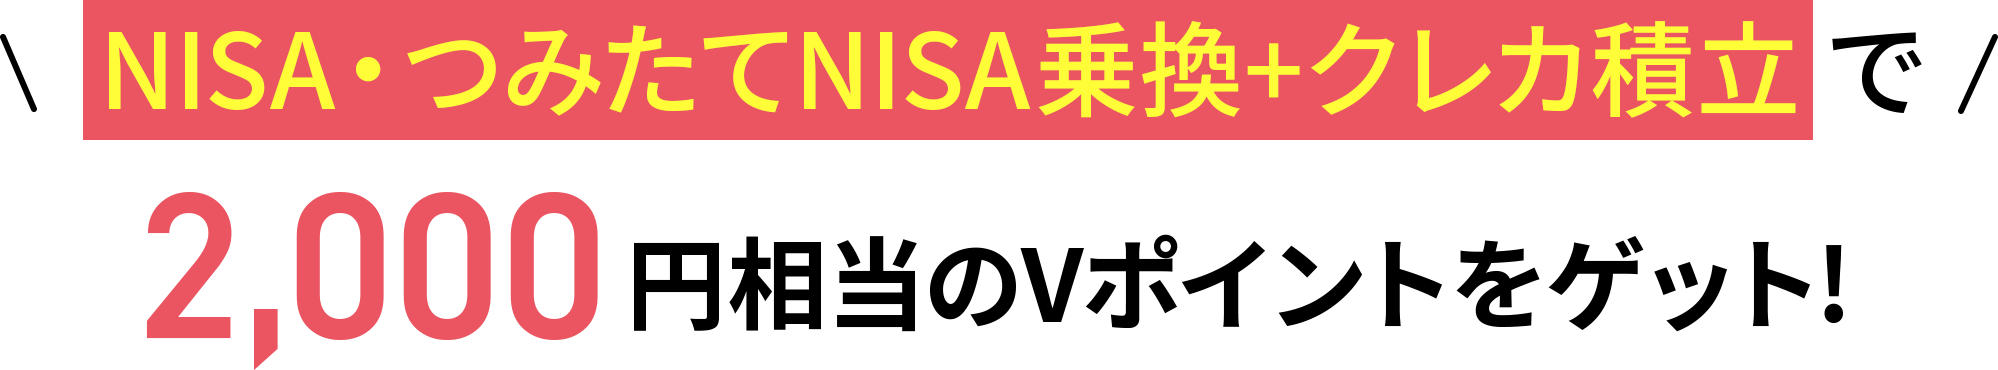 NISA・つみたてNISA乗換+クレカ積立で2,000円相当のVポイントをゲット！